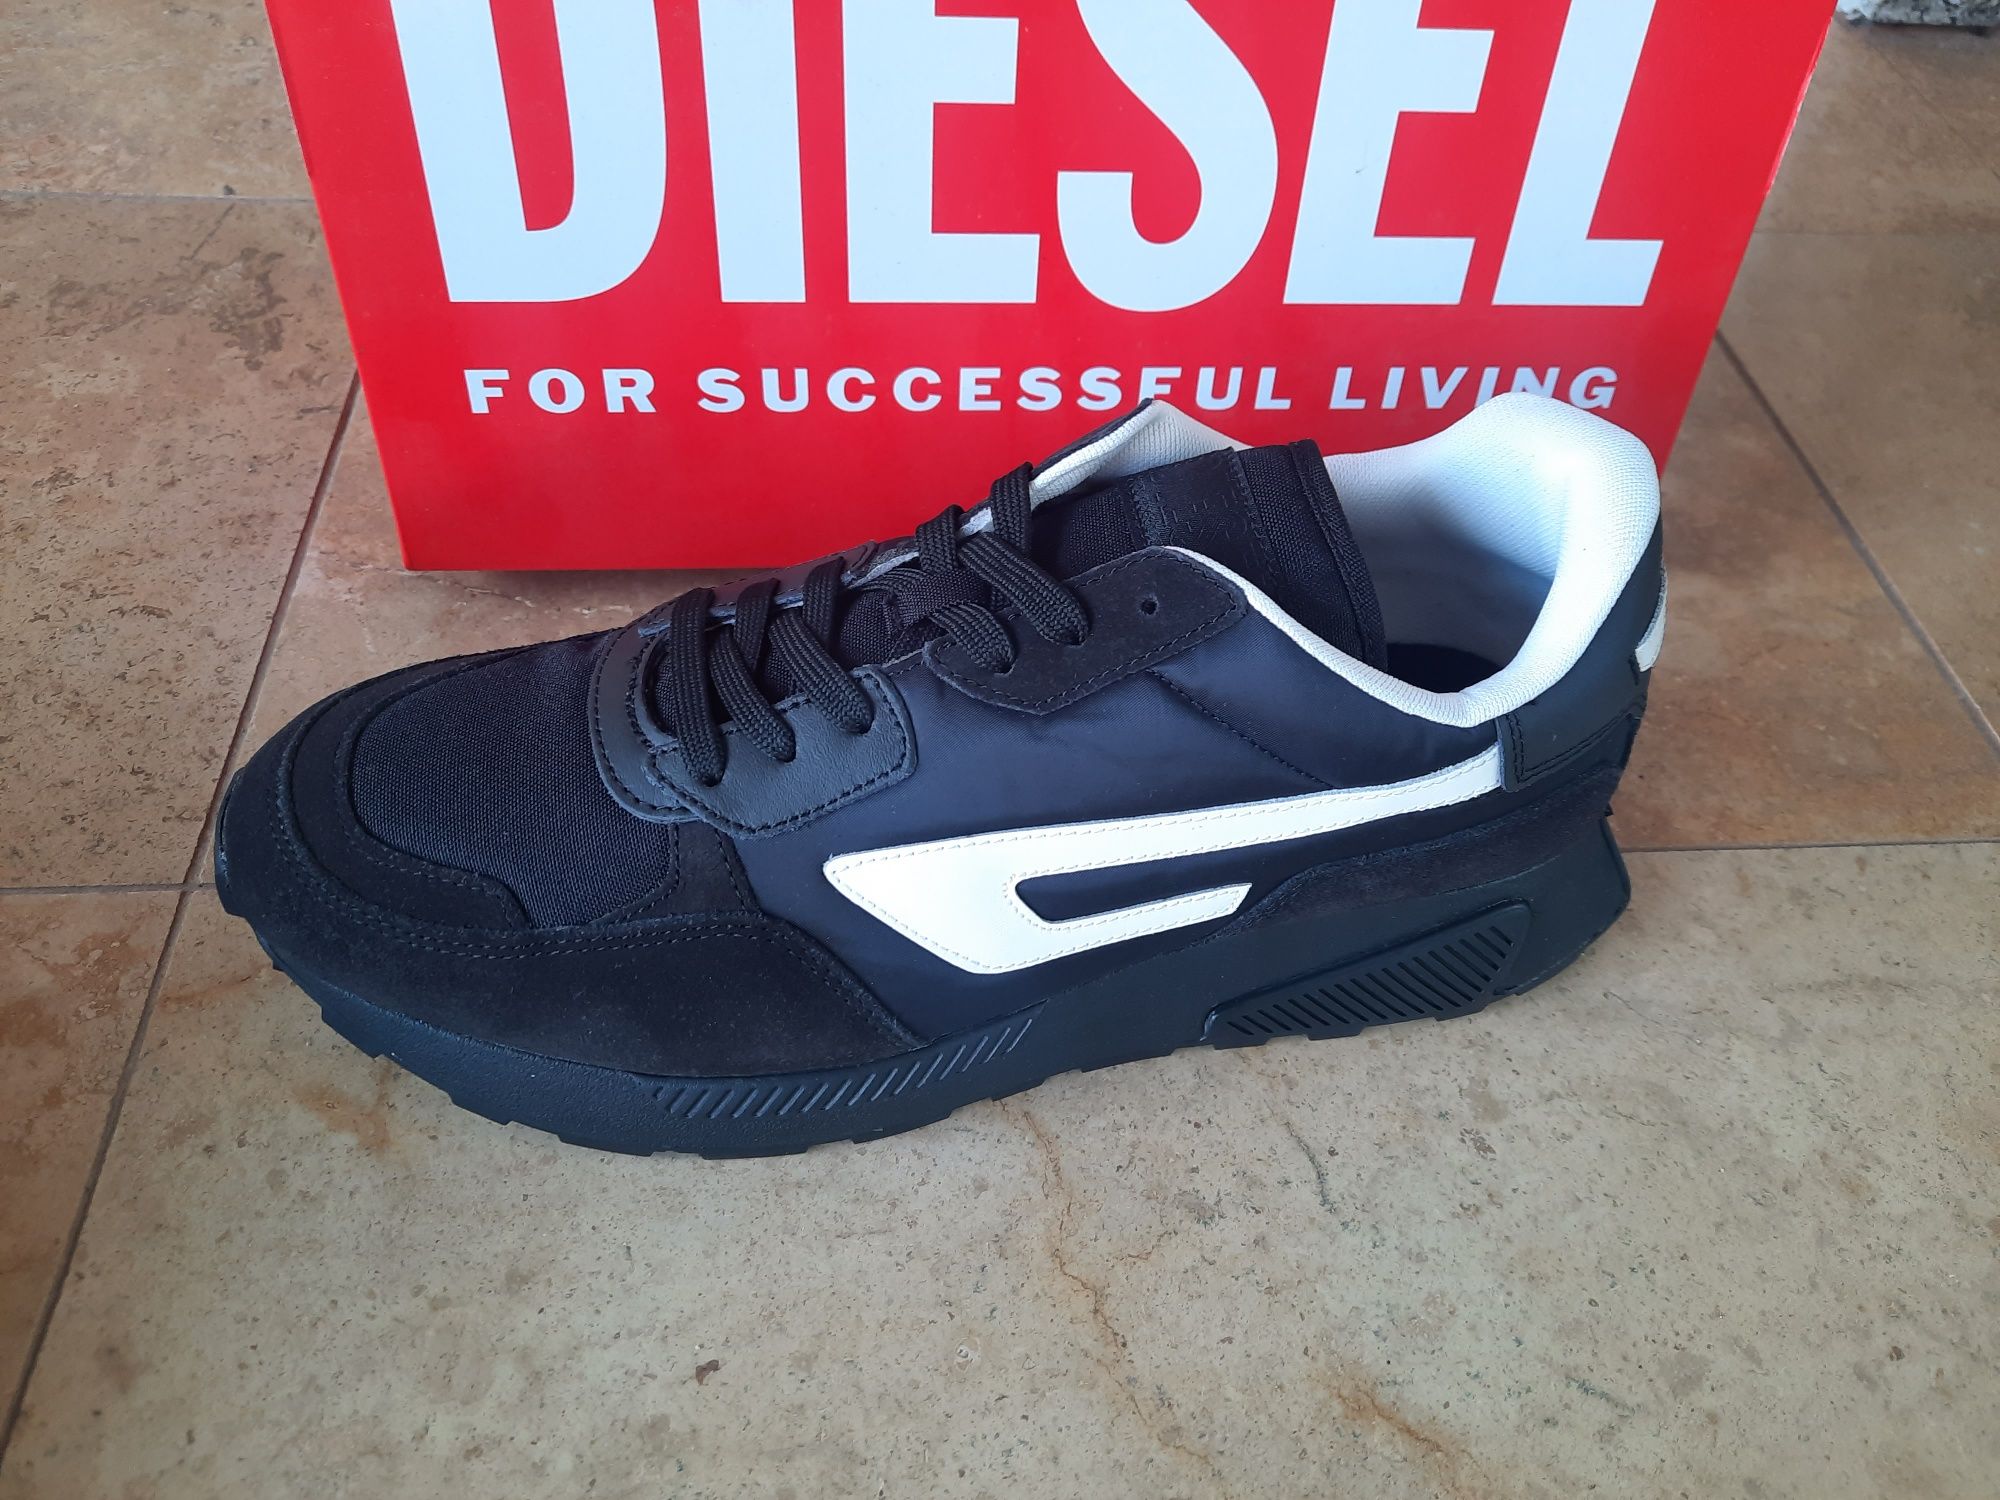 Adidasi Diesel Originali